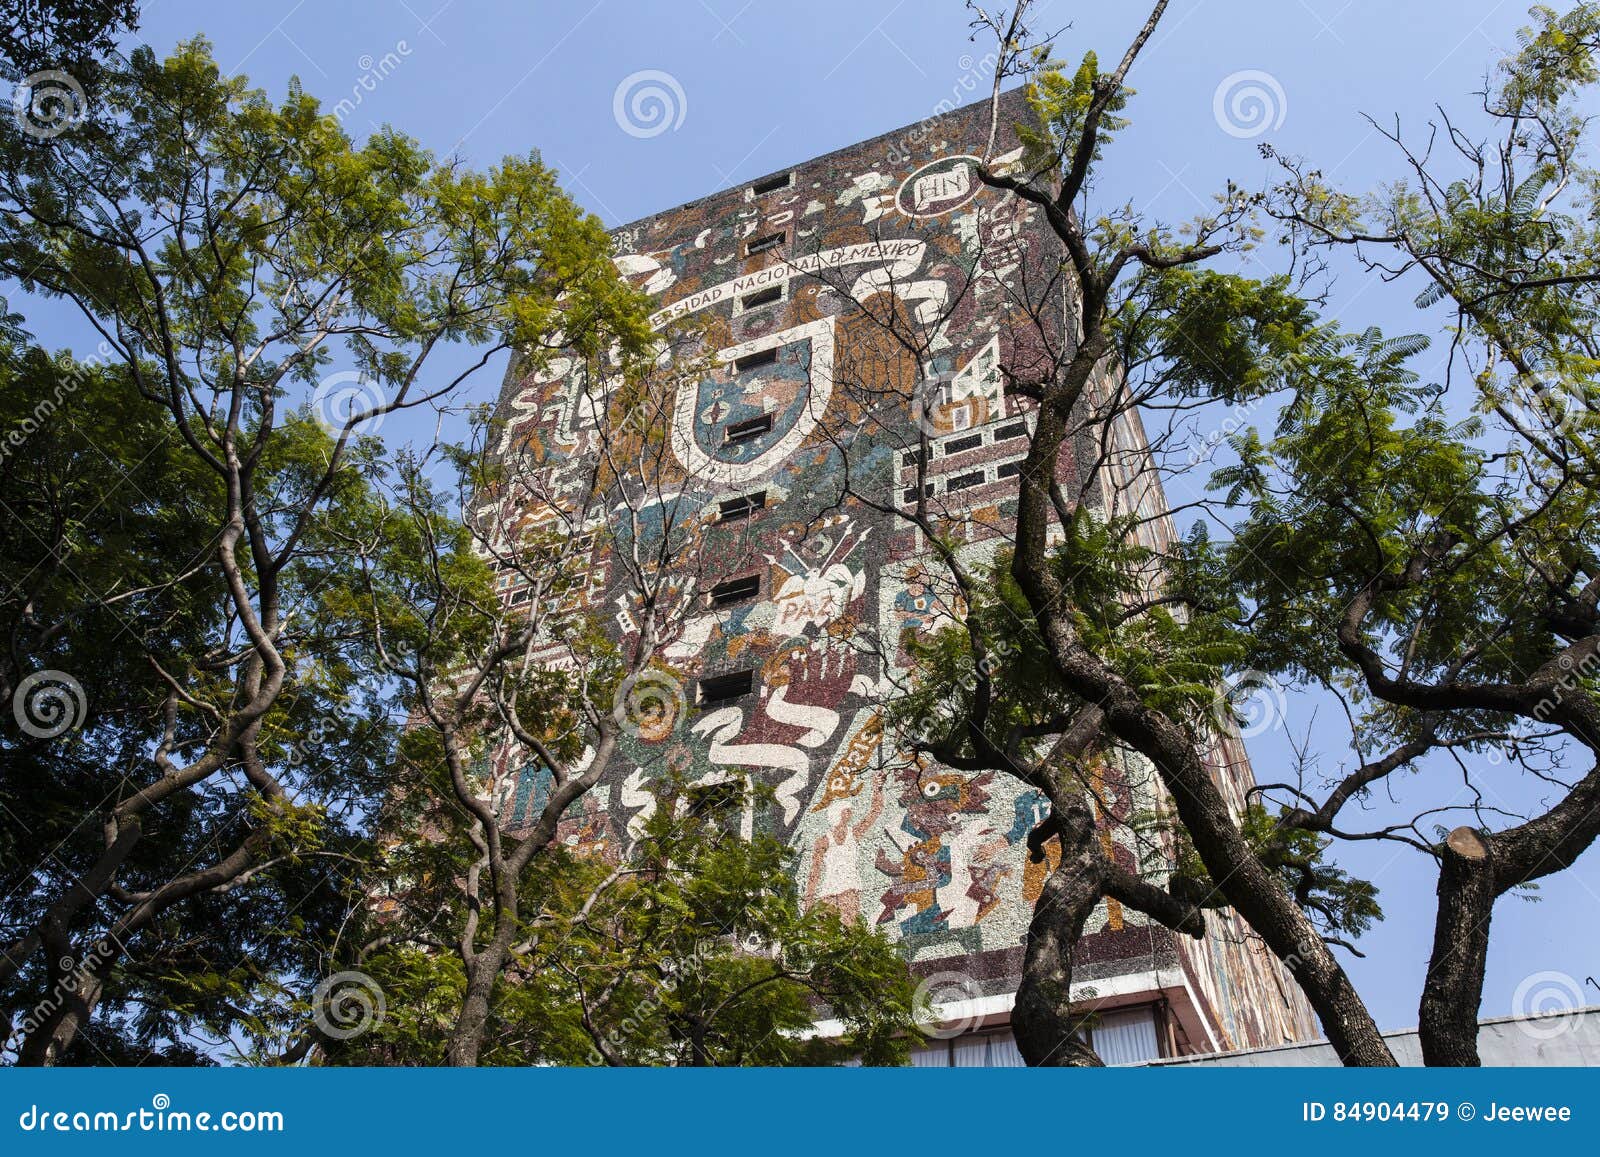 facade of the central library biblioteca central at the ciudad universitaria unam university in mexico city - mexico north am